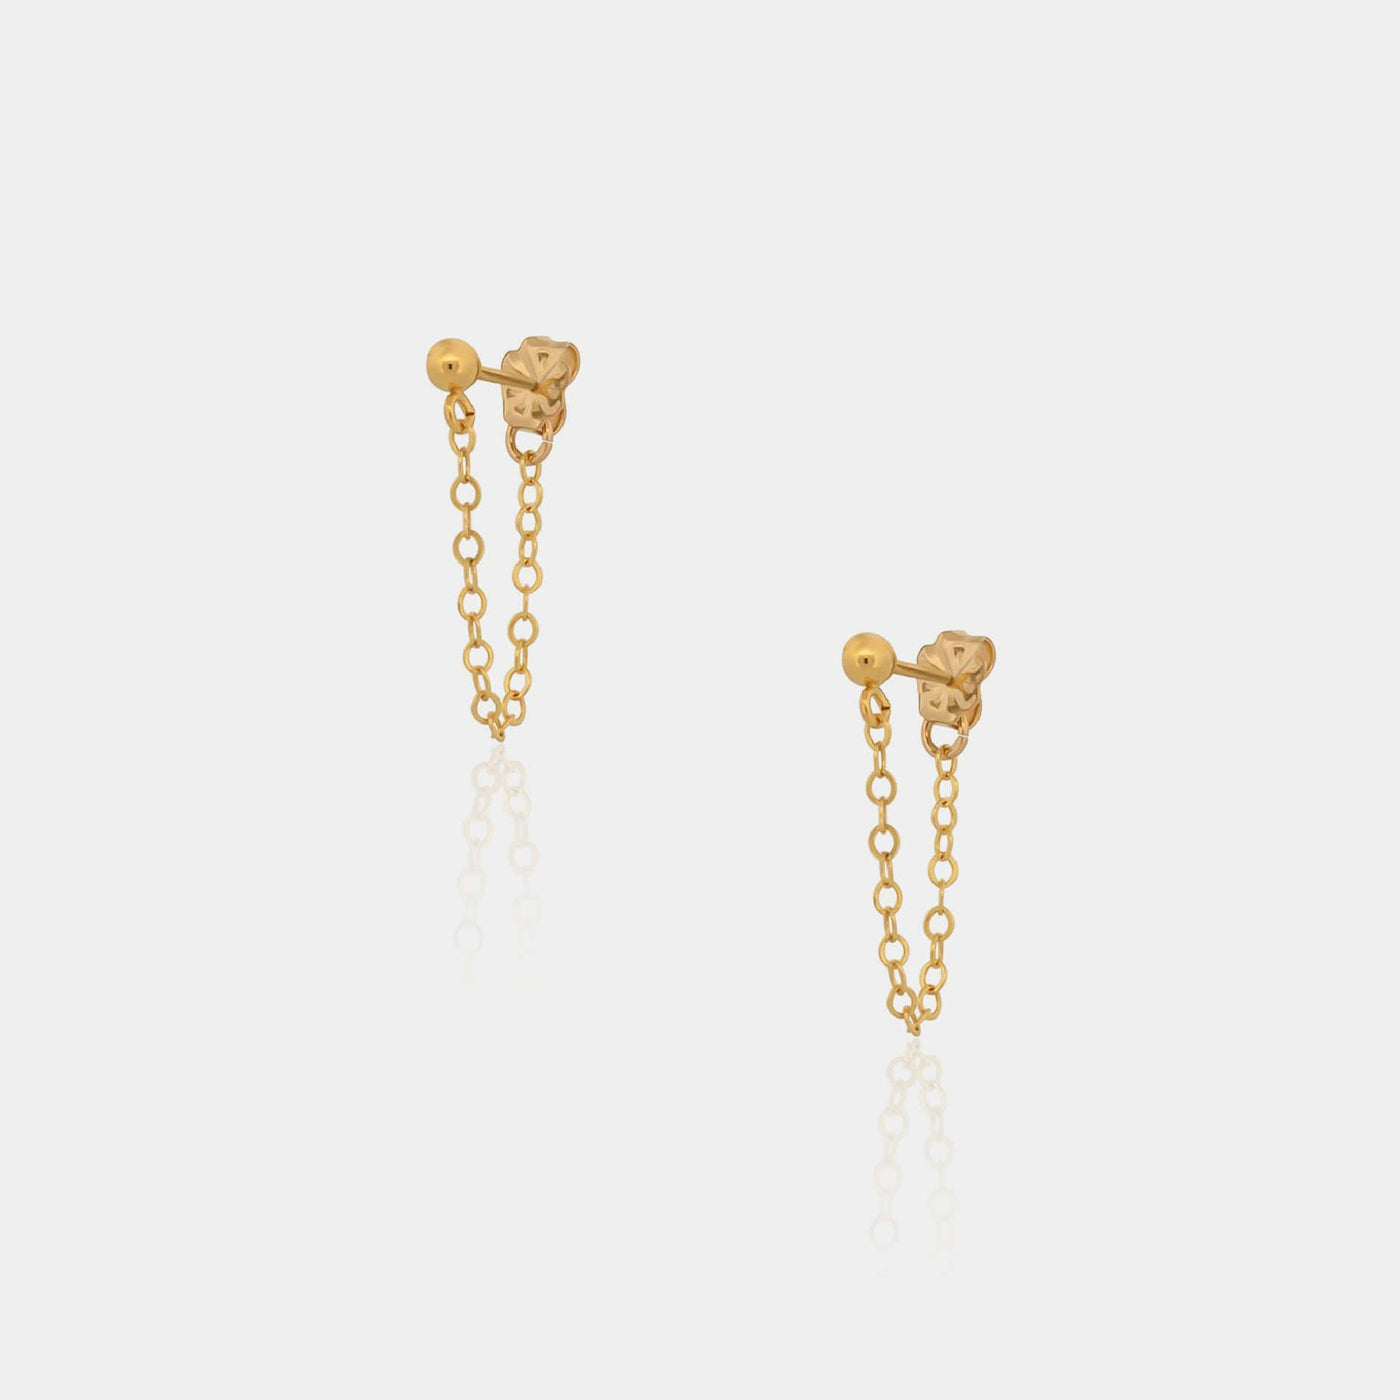 14K Gold Filled Earrings Chain Bead Stud Earring 